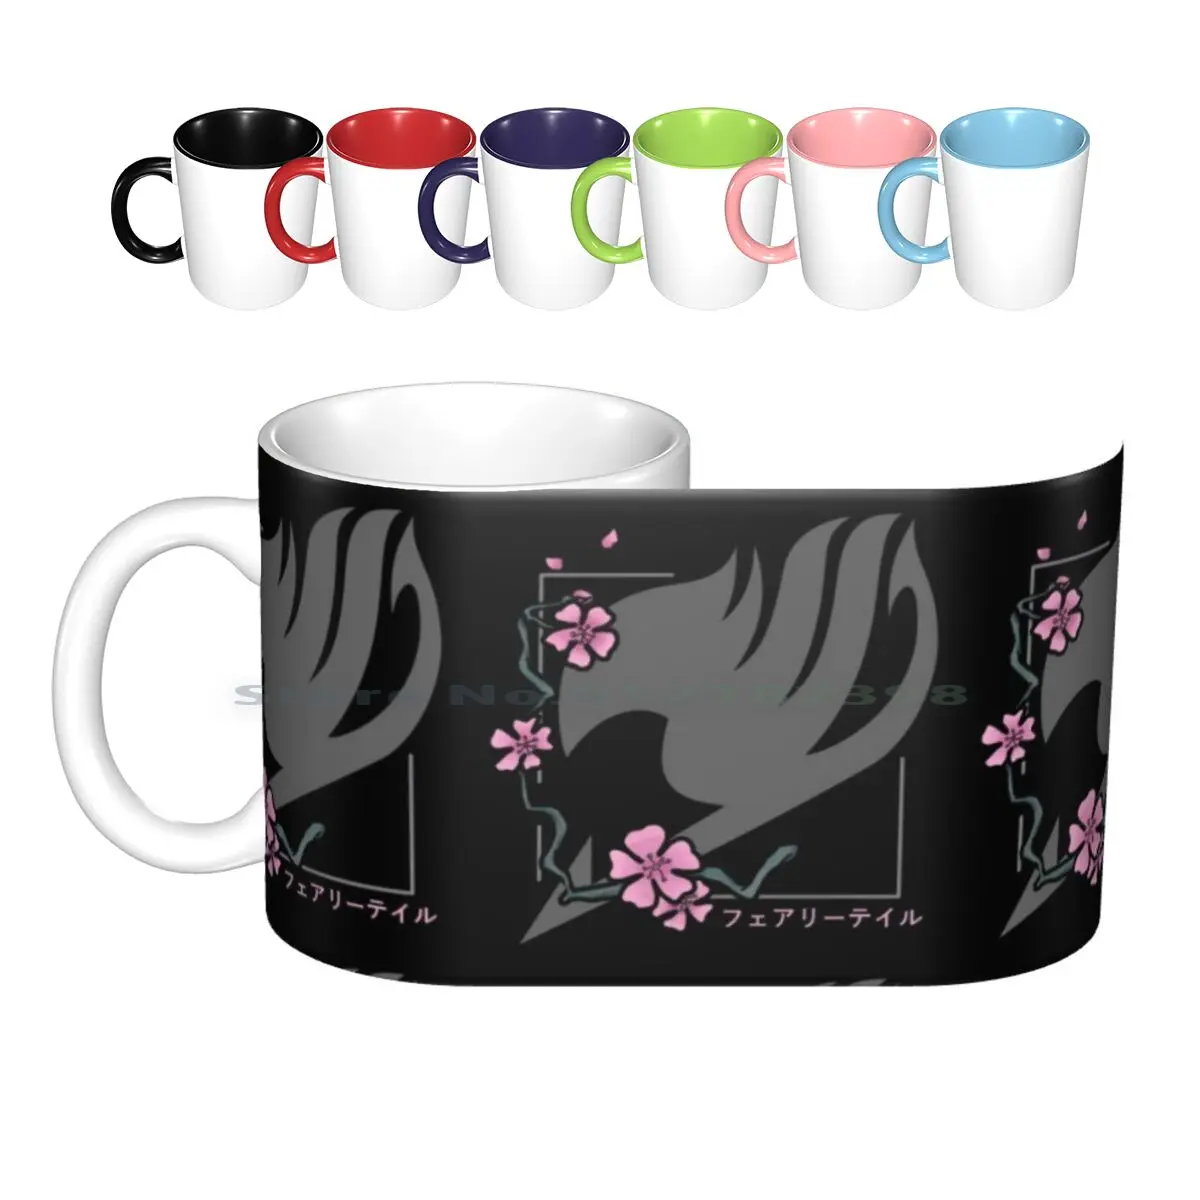 

Керамические кружки с изображением цветущей вишни, кофейные чашки, кружка для молока, чая, сказочный хвост, Гильдия гильдии, сказочный хвост...